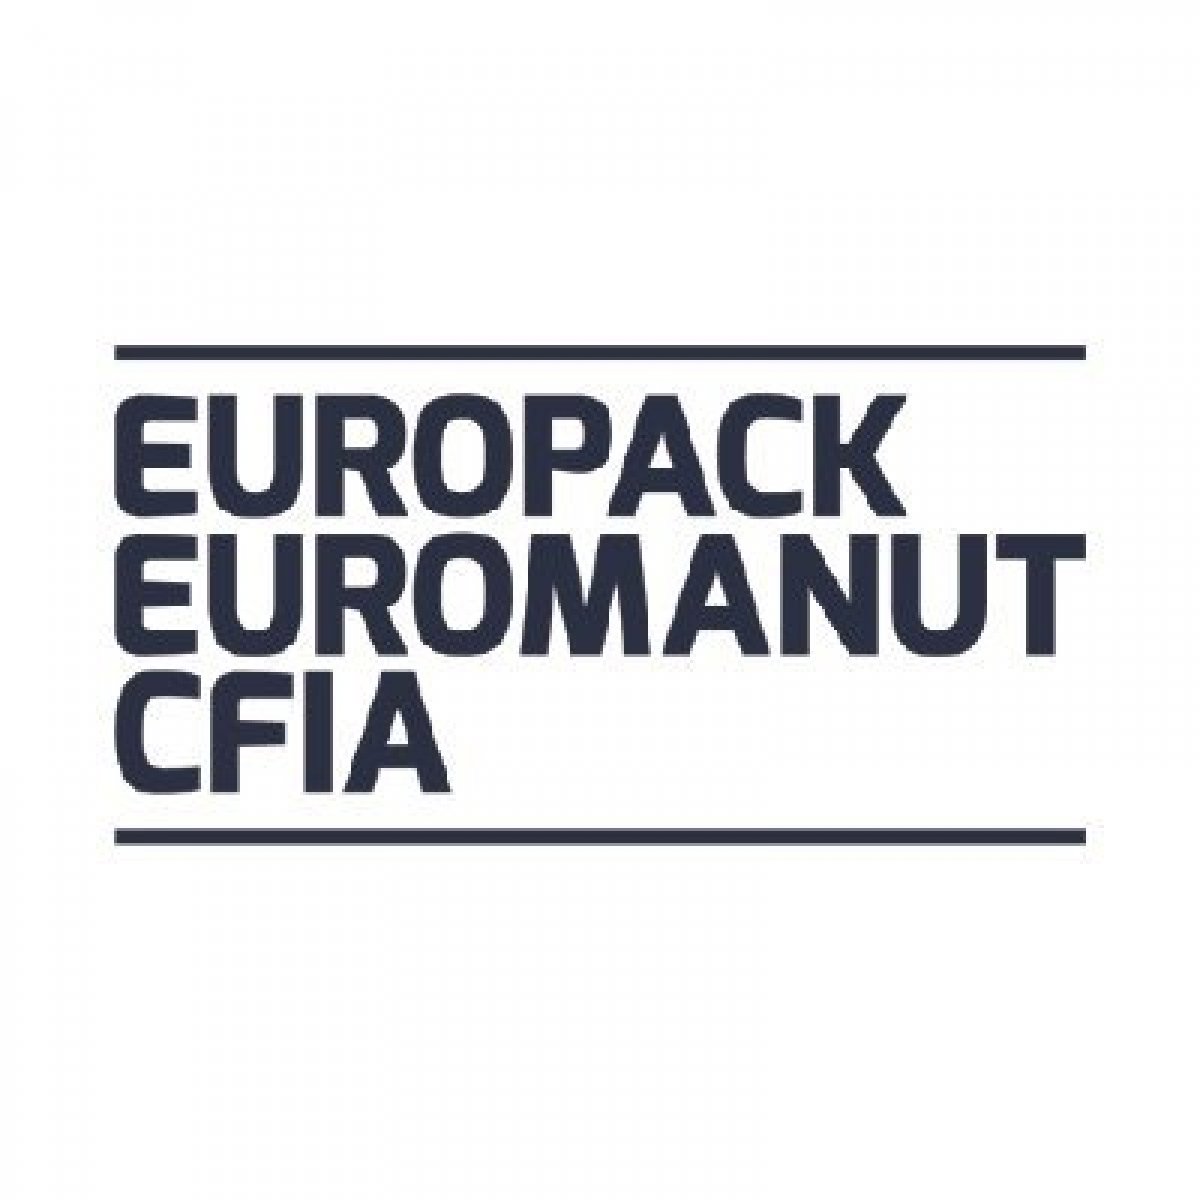 Europack Euromanut CFIA - La exposición de manipulación, envasado y proceso.